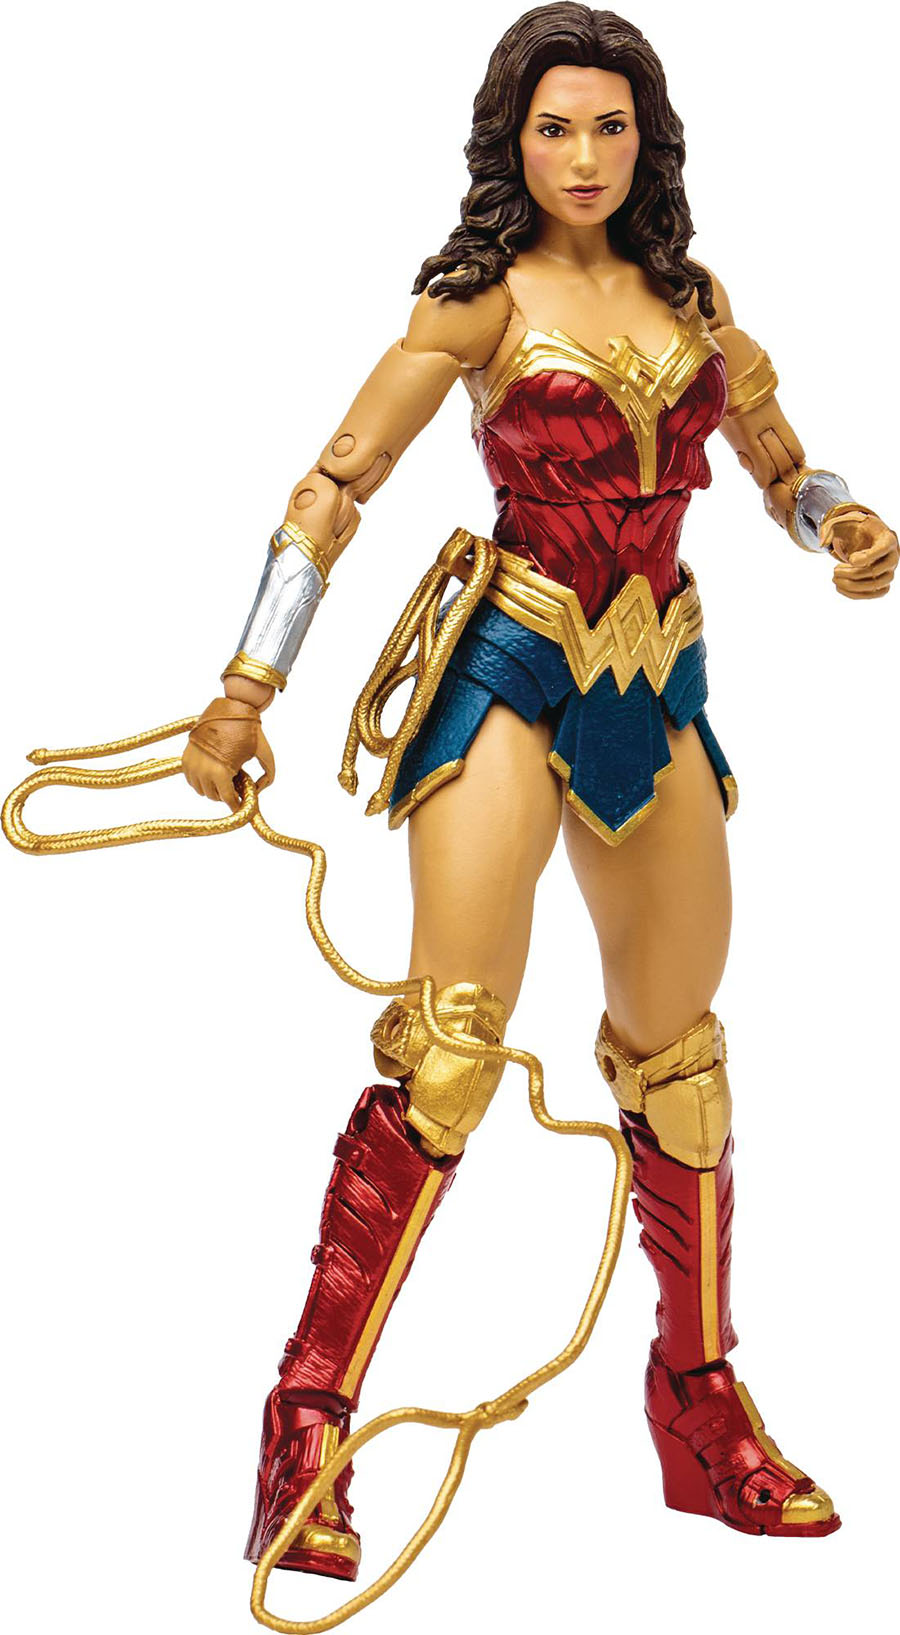 SHAZAM Fury Of The Gods Wonder Woman 7-Inch Action Figure